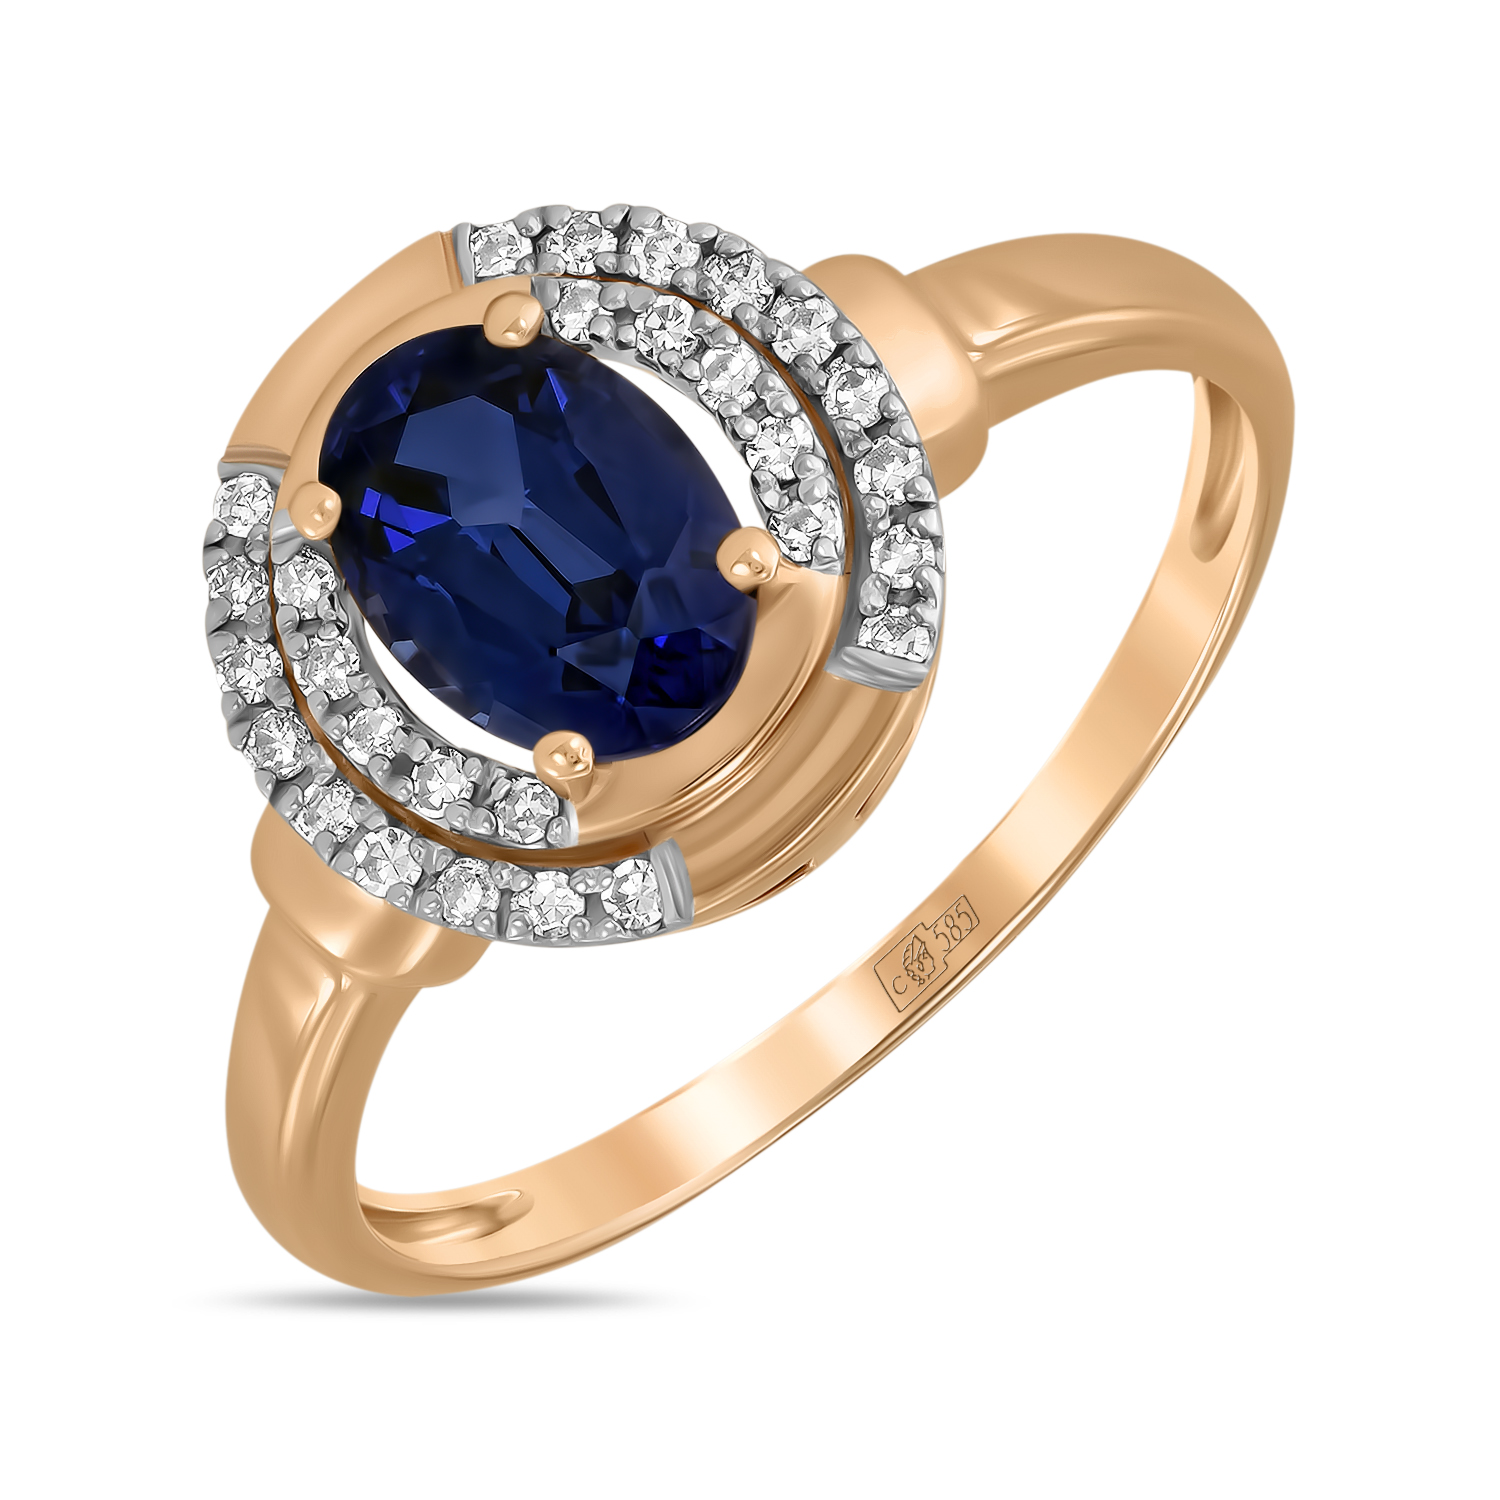 Кольца МЮЗ Золотое кольцо с бриллиантами и выращенным сапфиром miuz ru золотое кольцо c аметистами бриллиантами гранатами кварцем и выращенным сапфиром